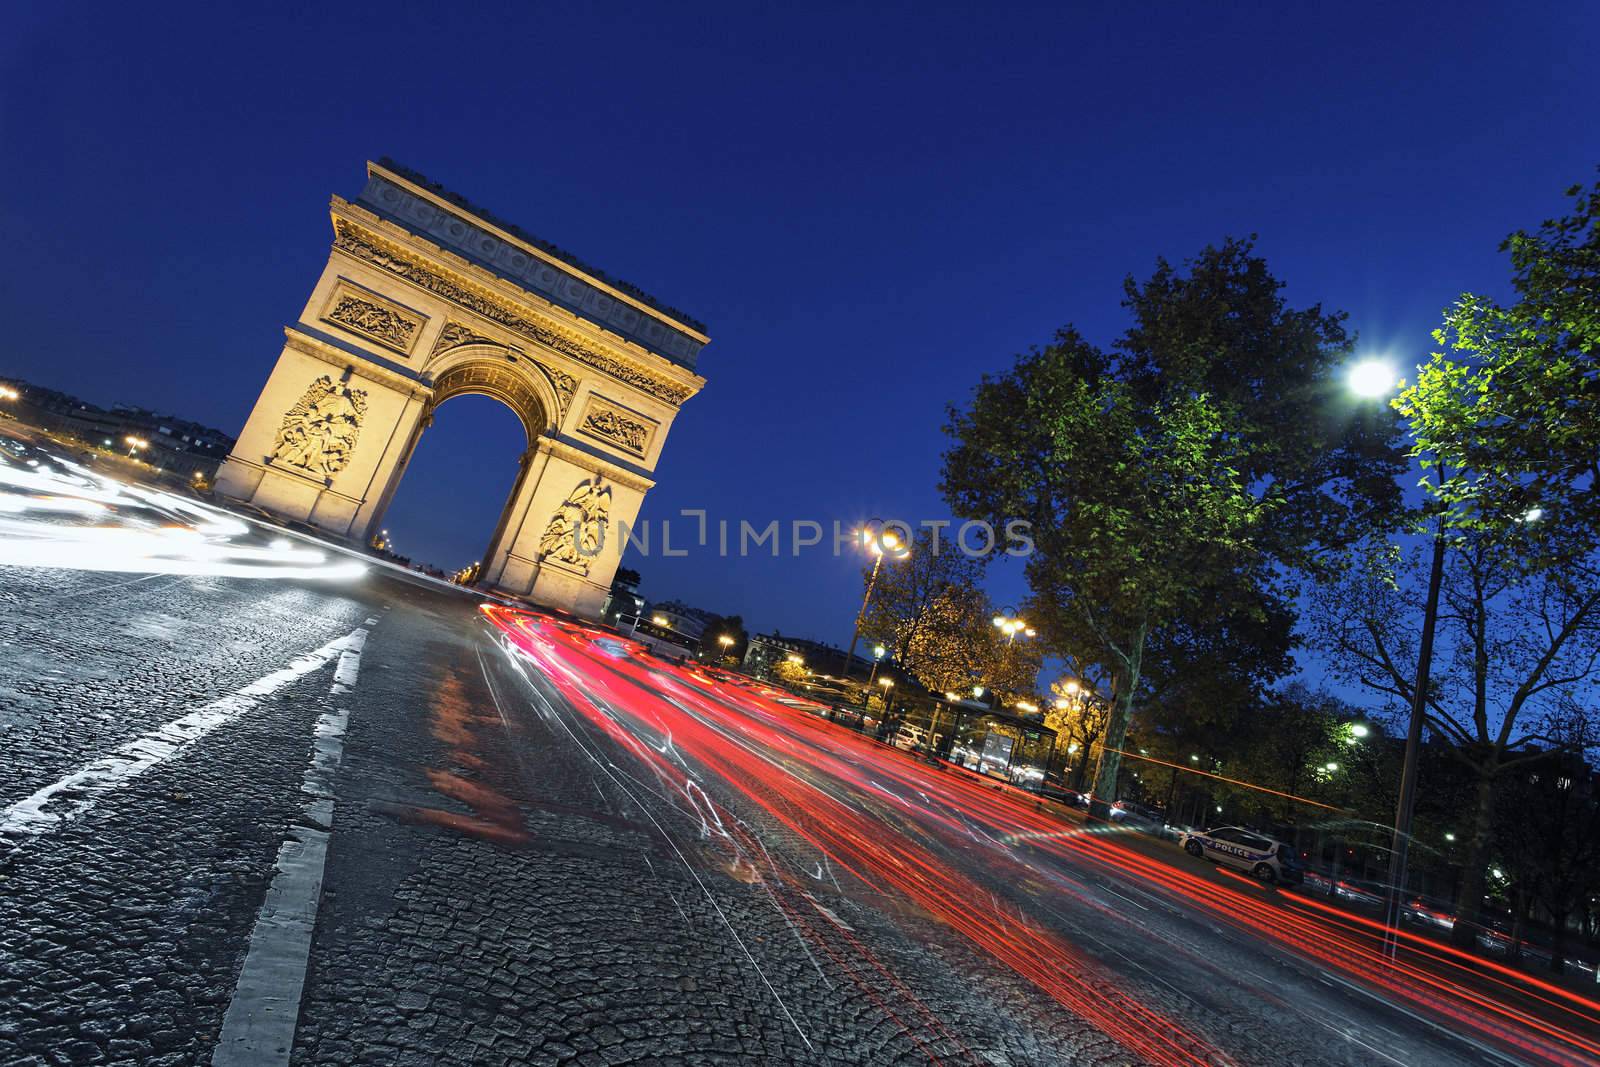 the "Arc de Triomphe" by night, Paris France 